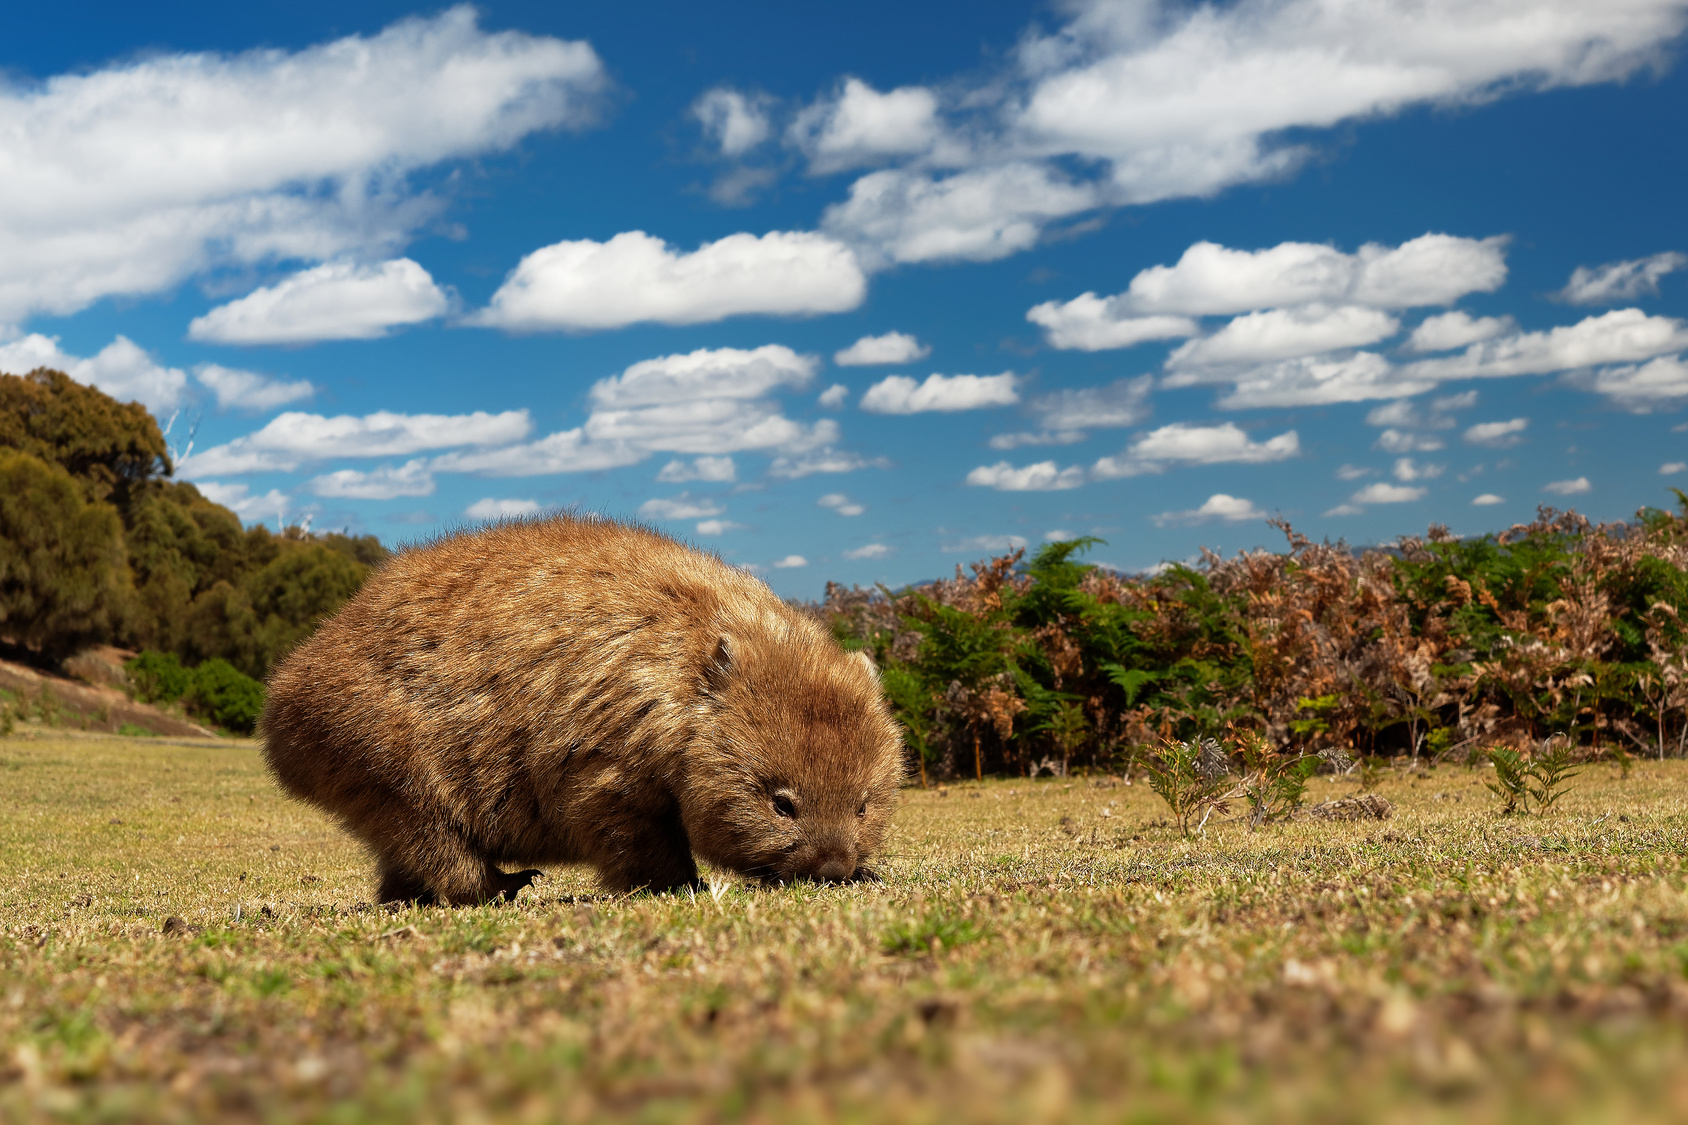 Le wombat commun est le plus gros mammifère creusant des terriers. © phototrip.cz, fotolia